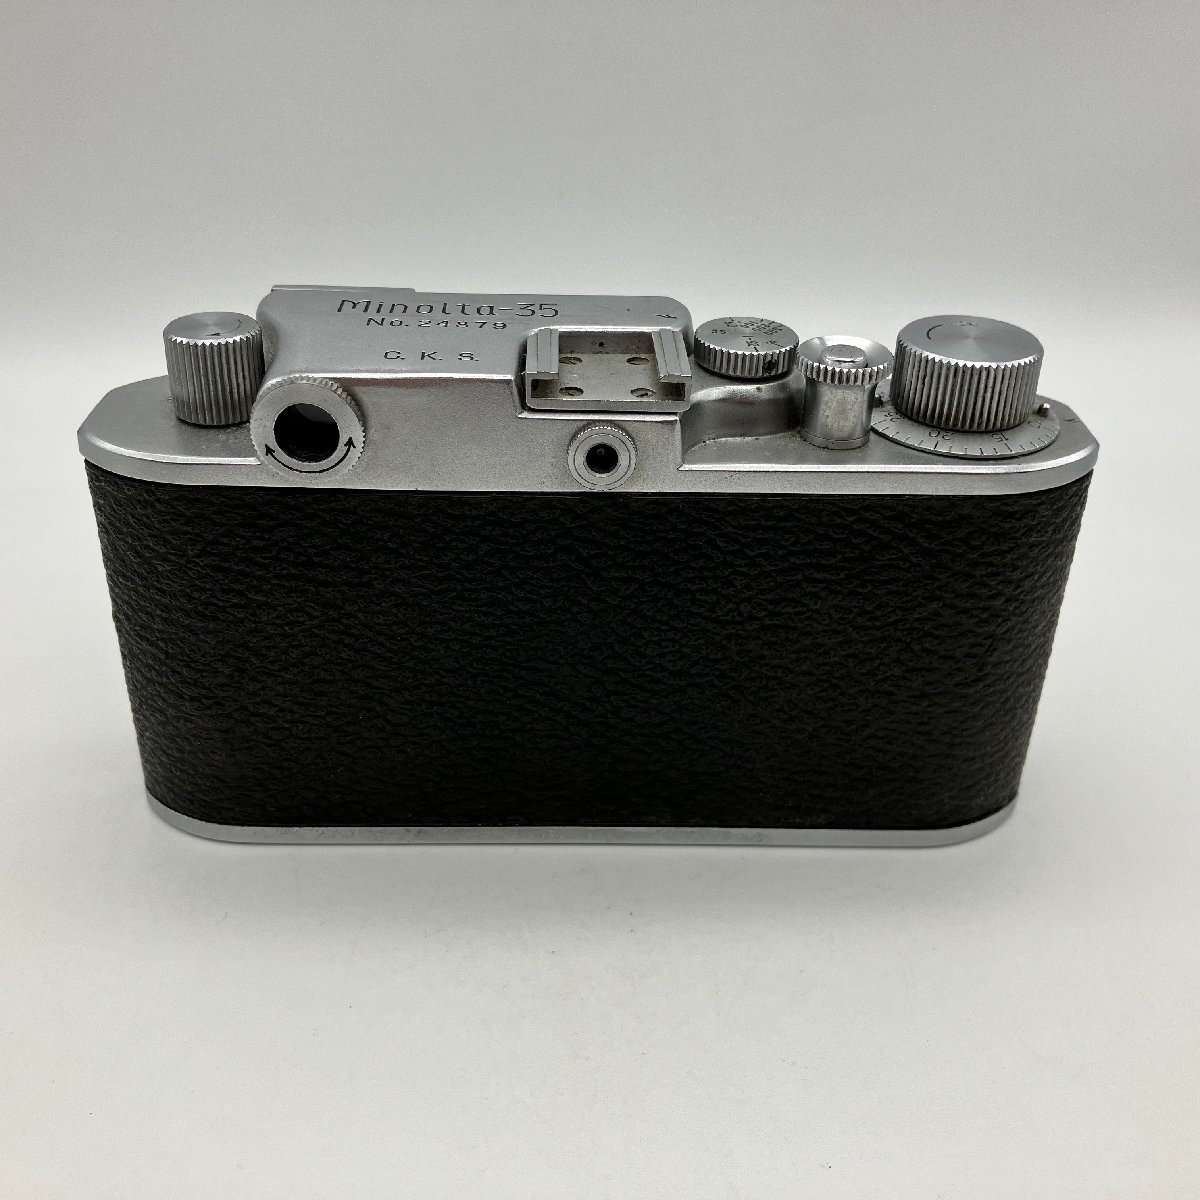 Minolta-35 MODEL-F C.K.S. ミノルタ35 モデルF Leica ライカ Lマウント ジャンク品_画像5